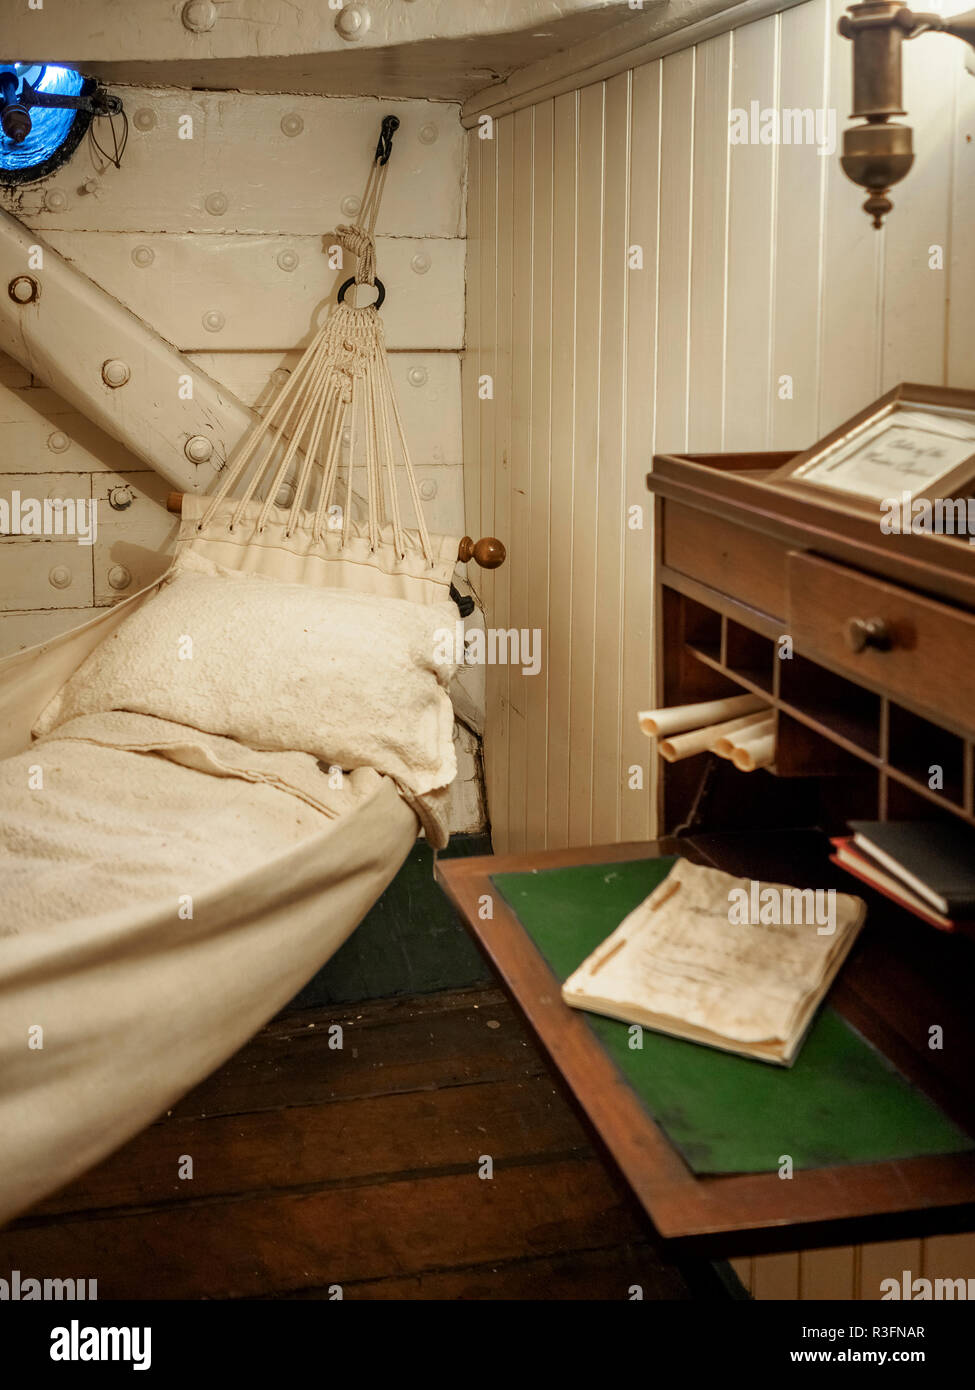 Dormitorio del capitán de buque de guerra más antiguo del mundo todavía a flote - USS Consituttion, es decir, la fragata norteamericana constitución en Boston, EE.UU. Foto de stock